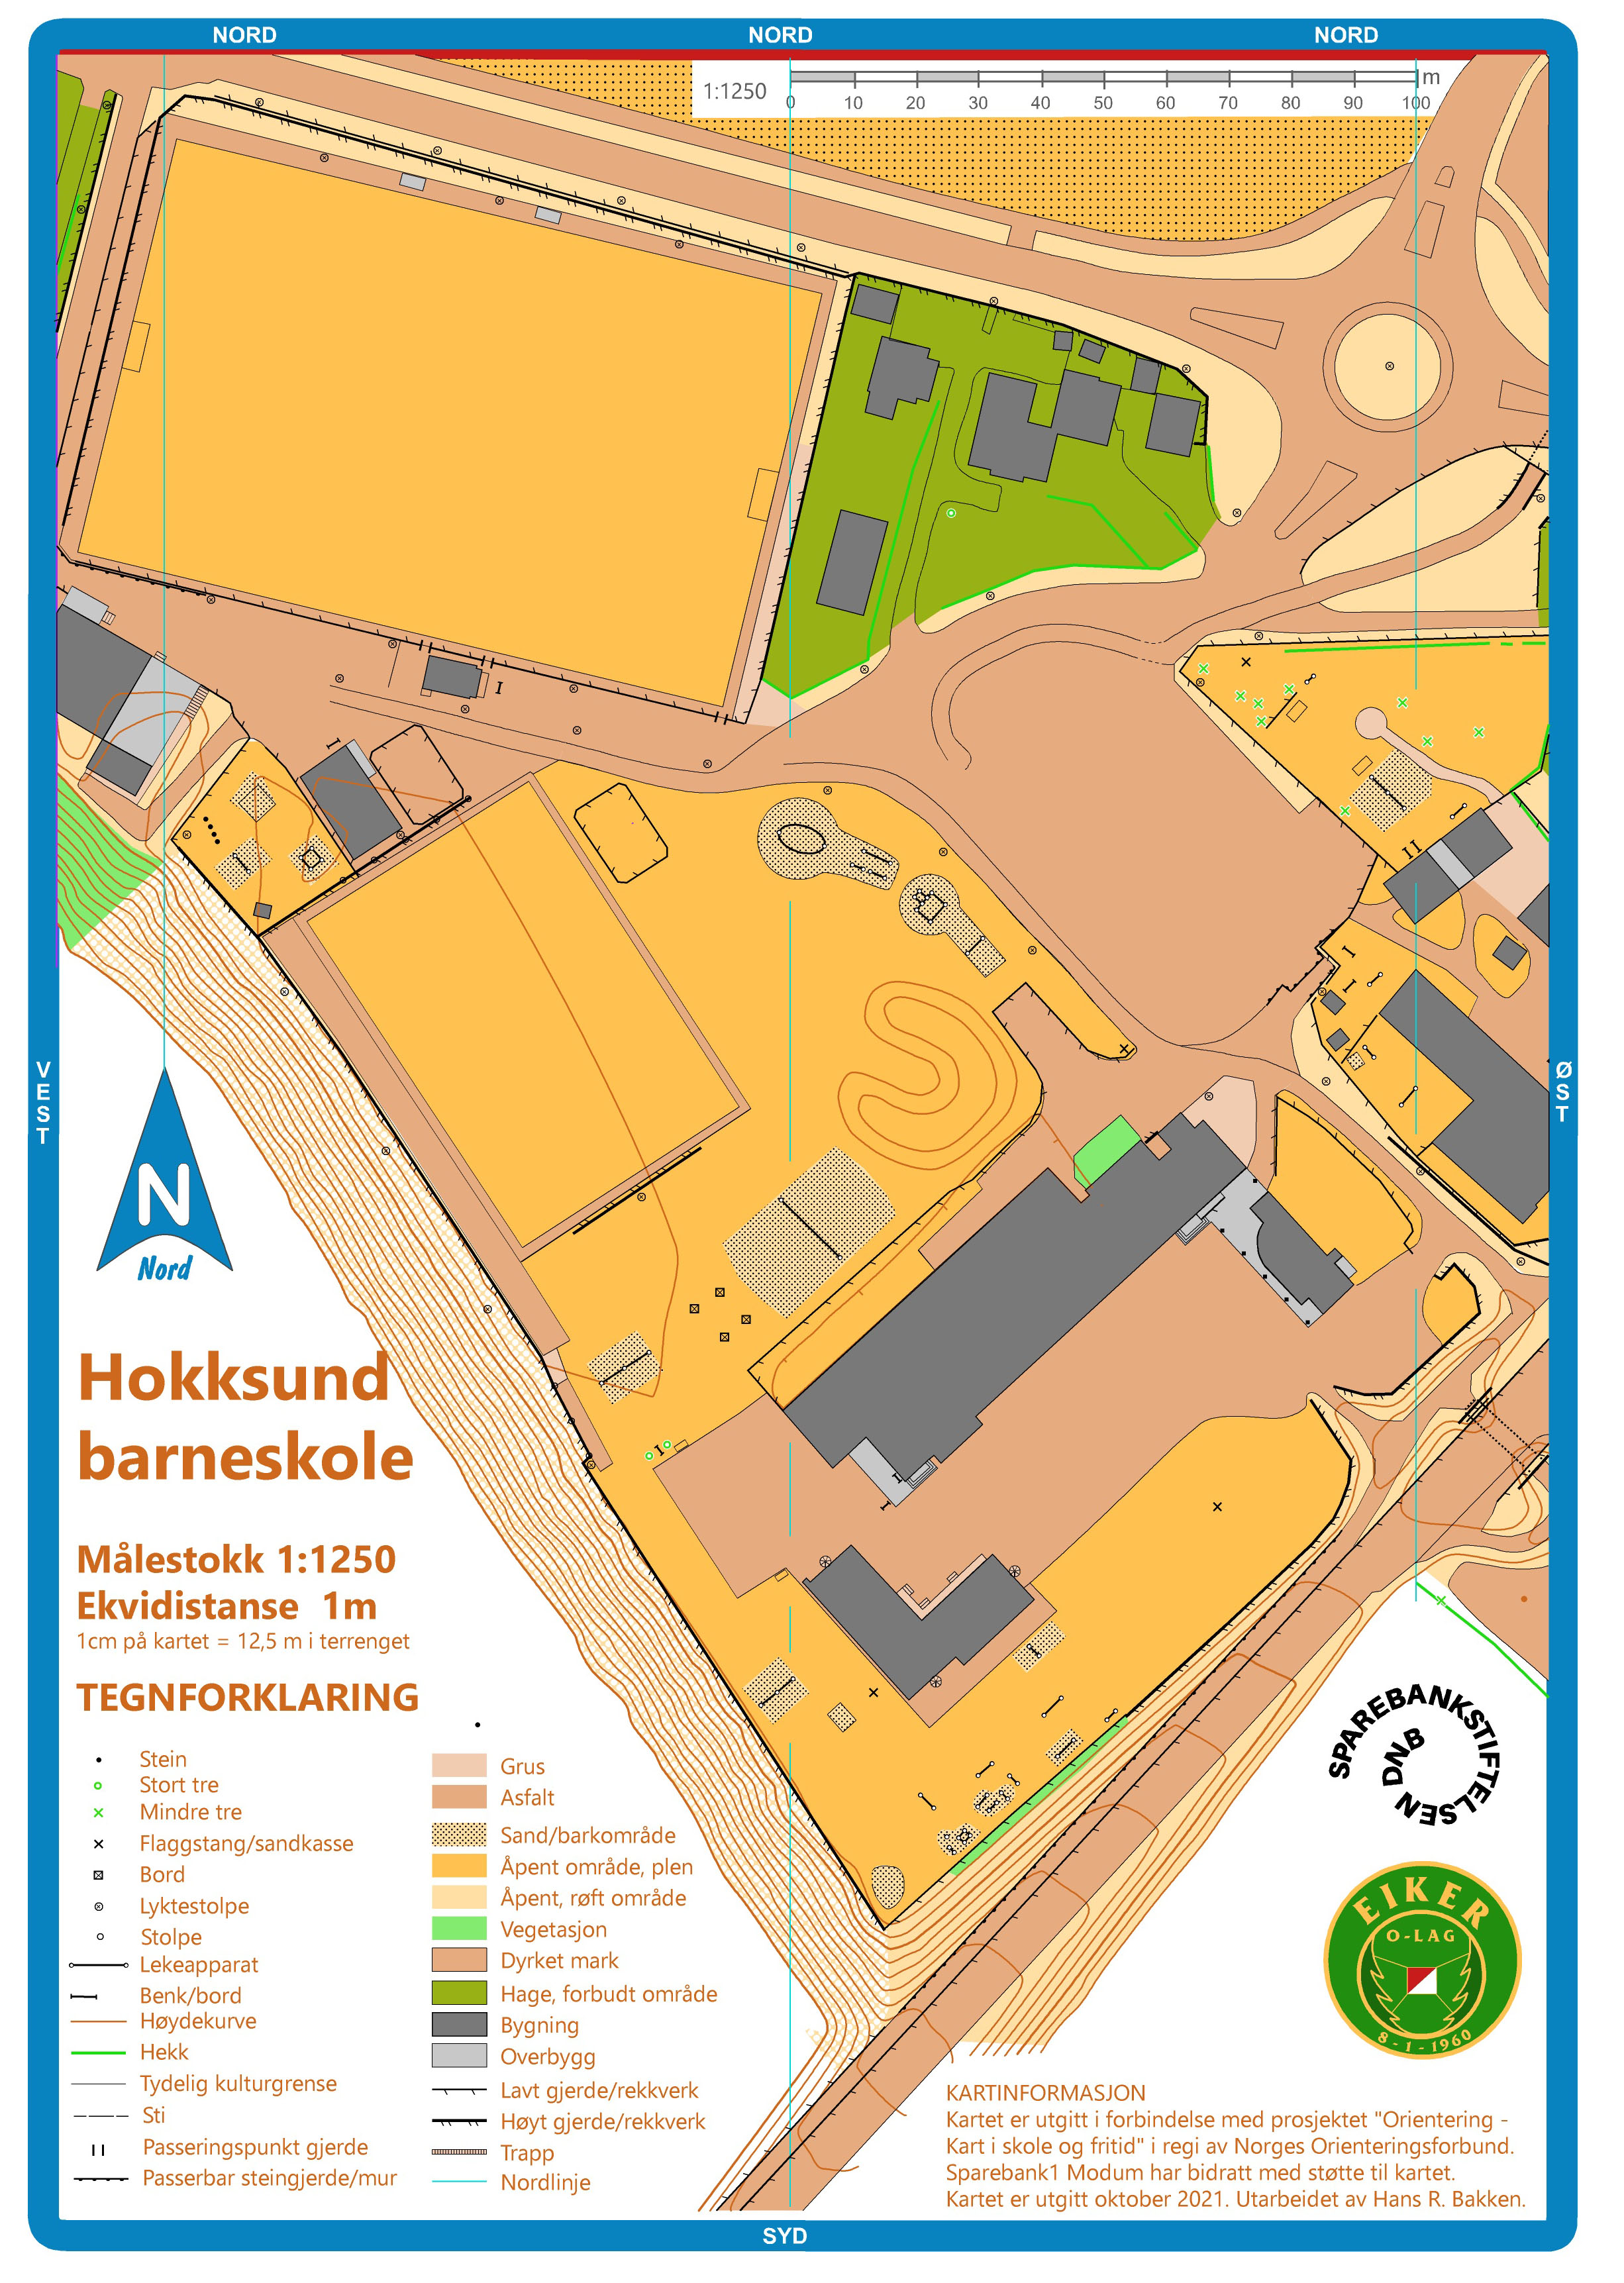 Hokksund barneskole (01-10-2021)